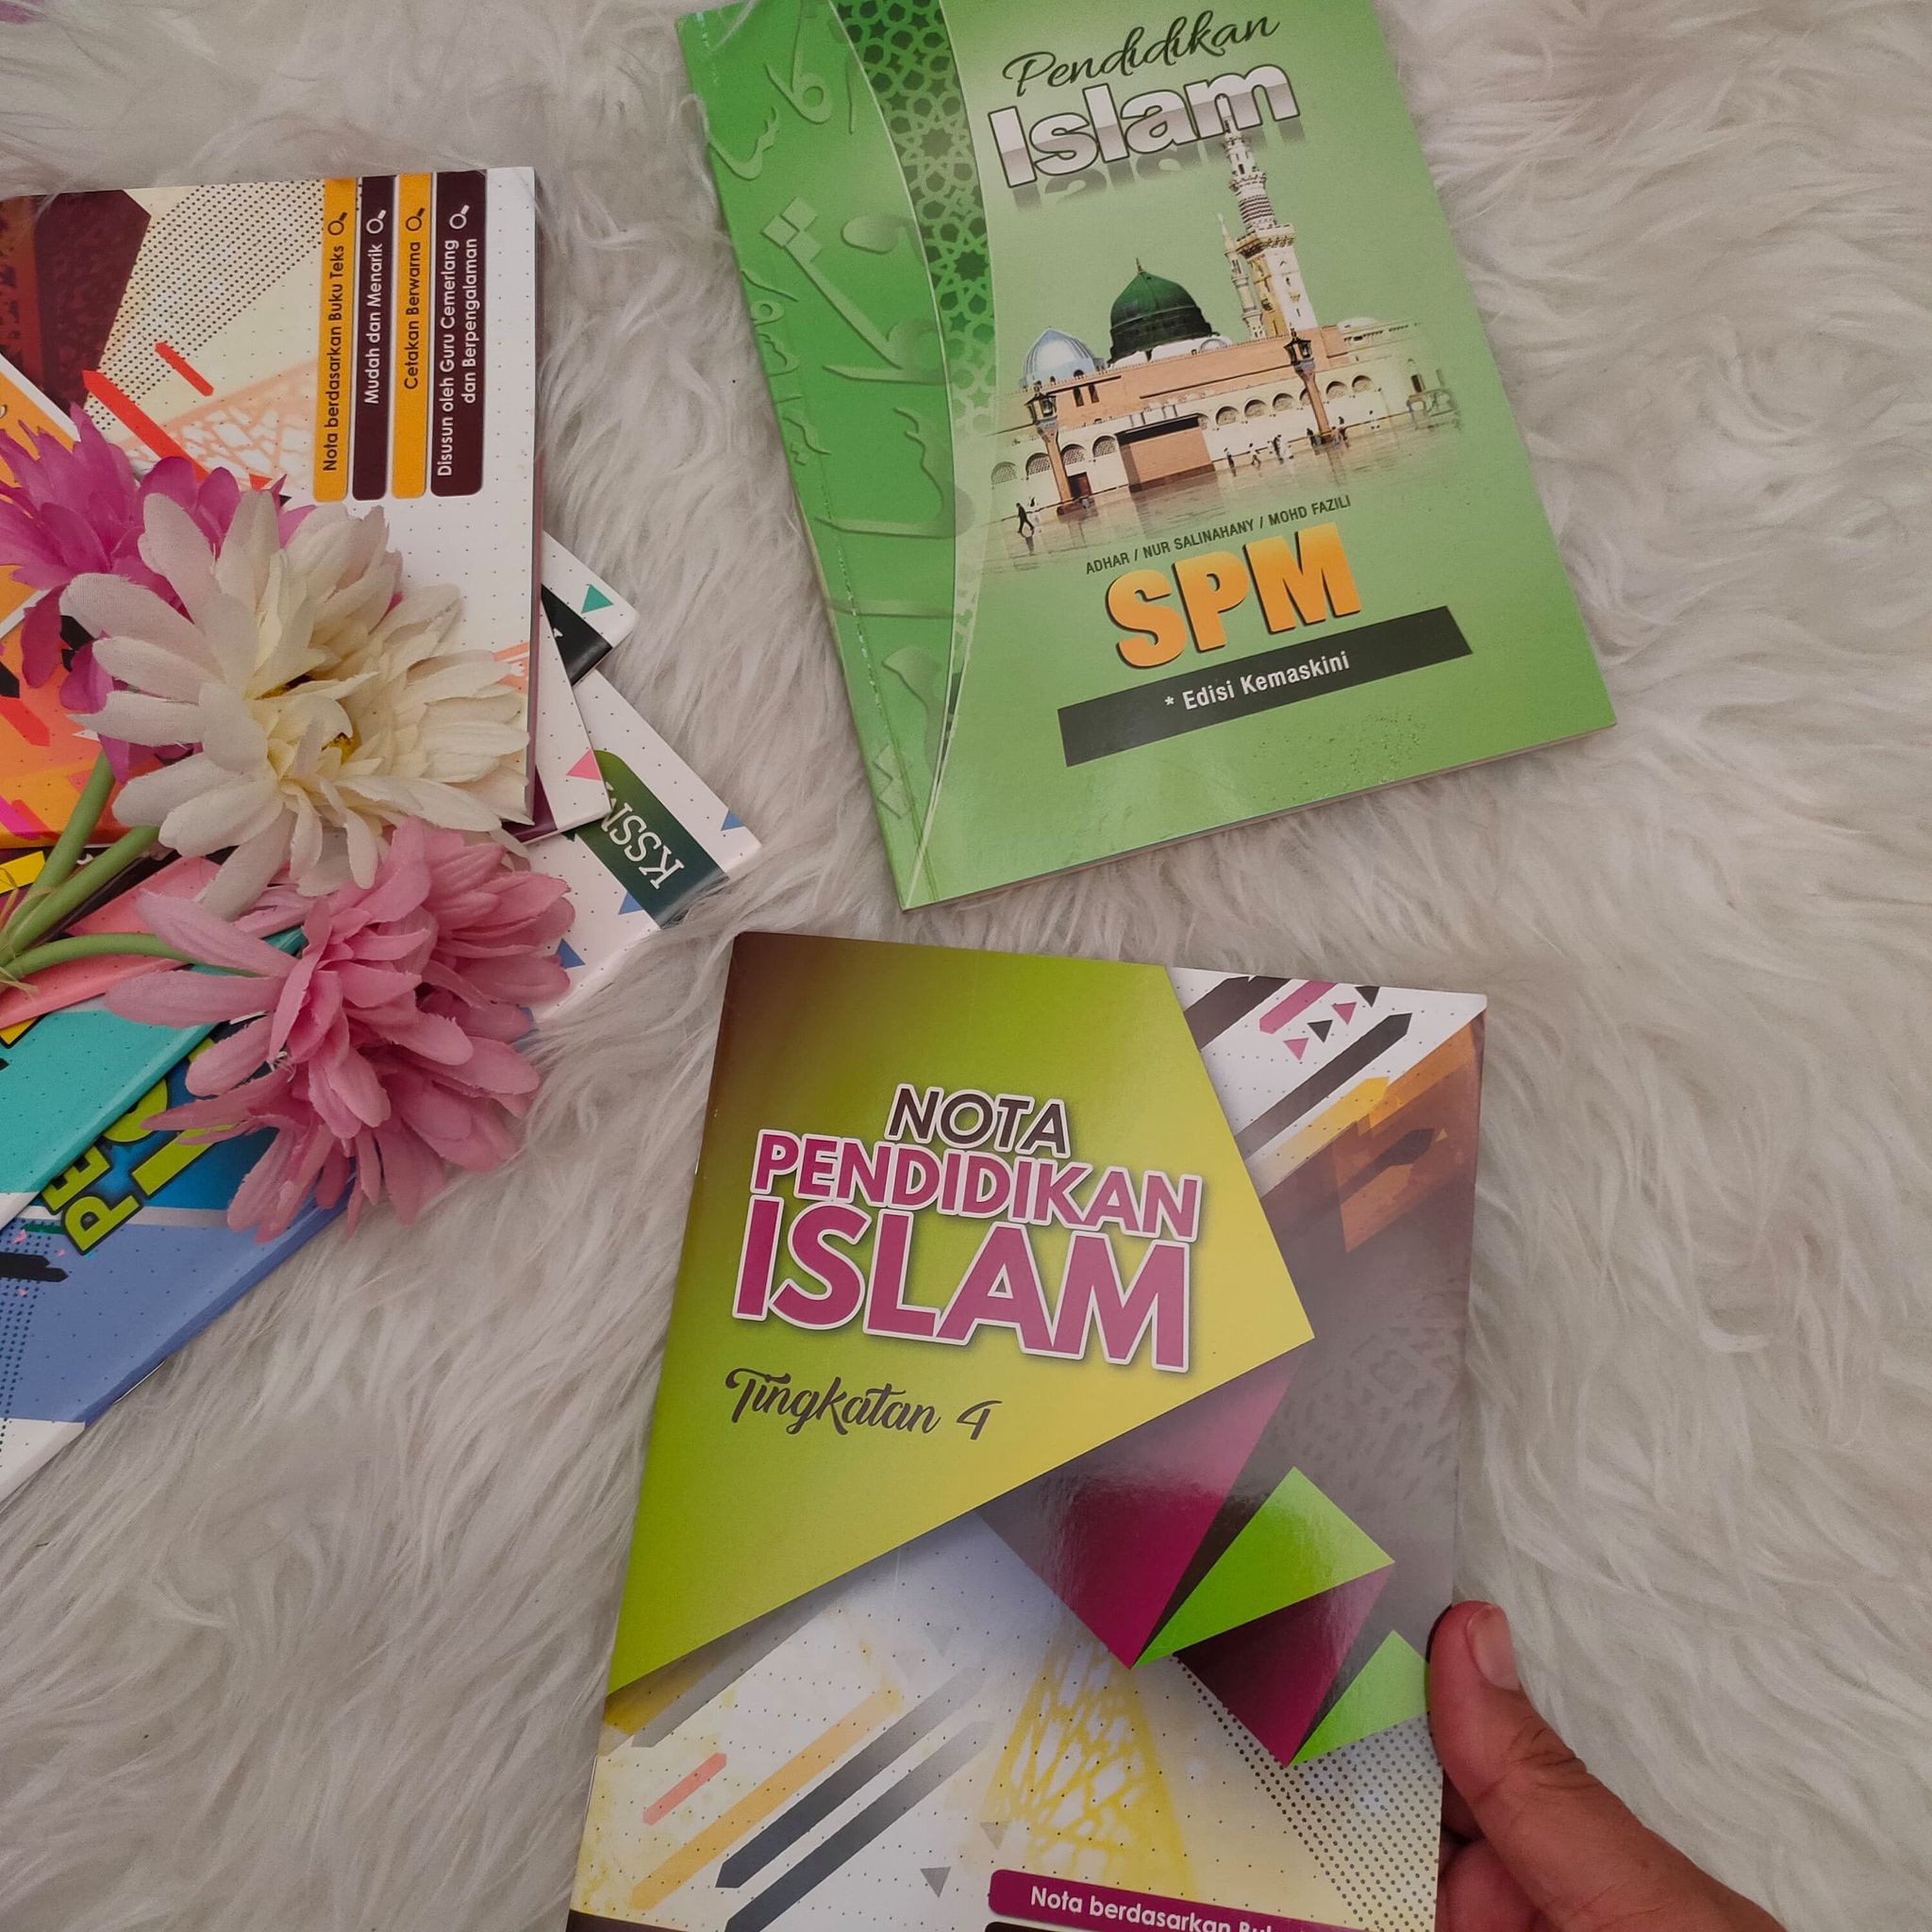 Buku Rujukan Pendidikan Islam Yang Padat dan WarnaWarni Buat Anak